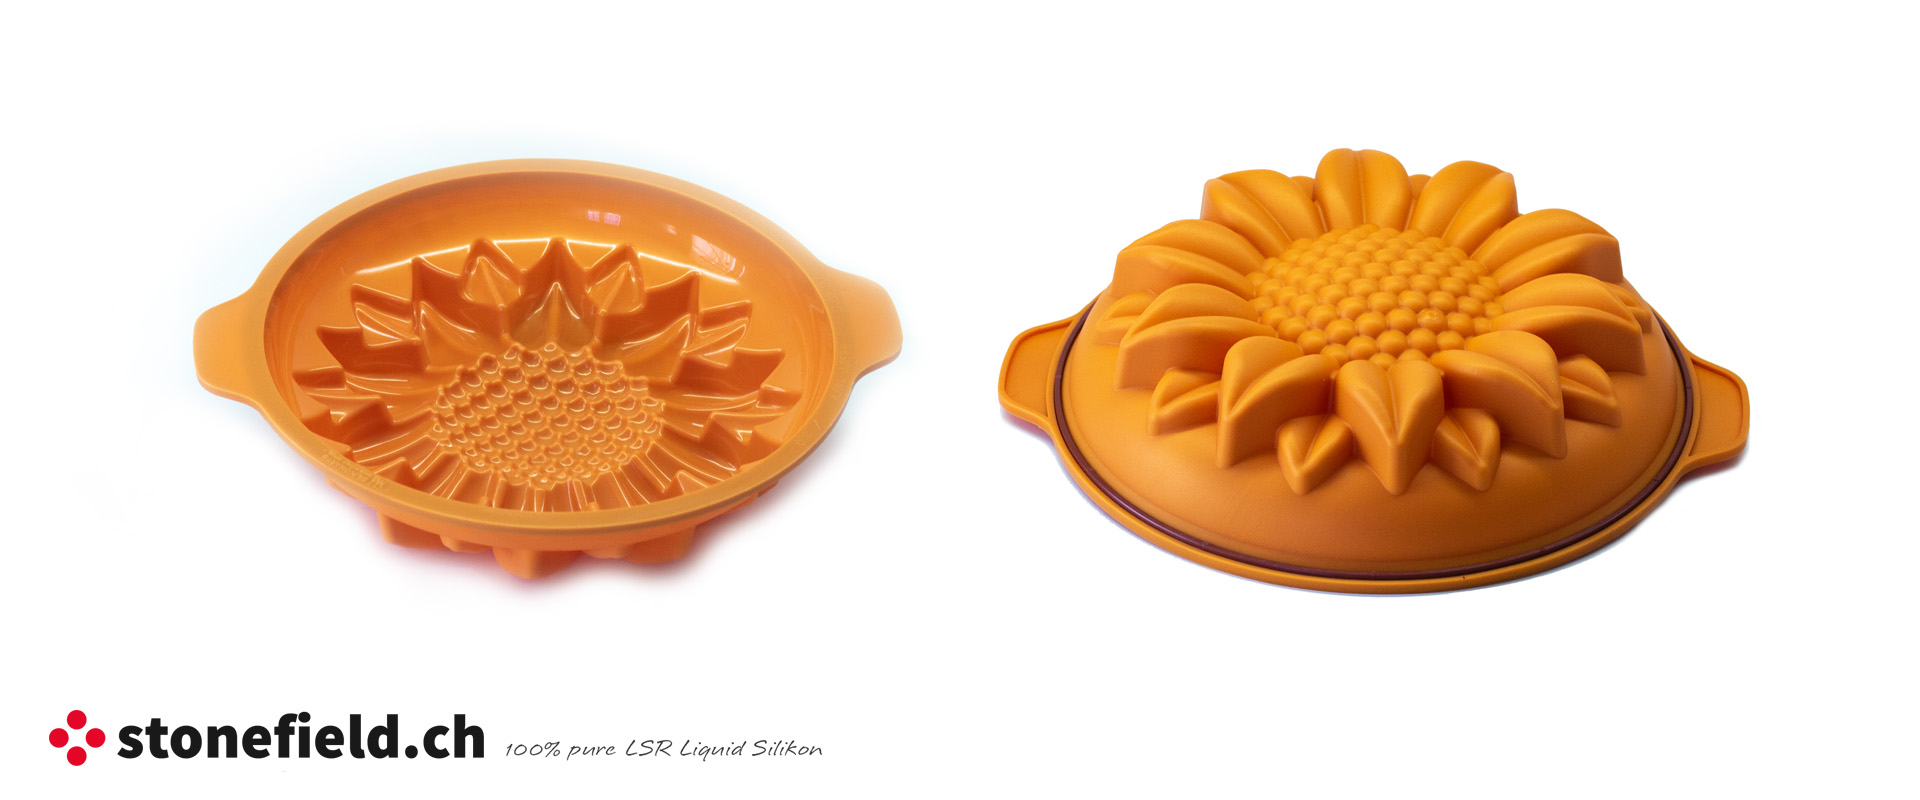 Die Sonnenblume Backform aus Silikon hat ein sehr schönes Design und ist ideal für den Sommer und den Frühling.